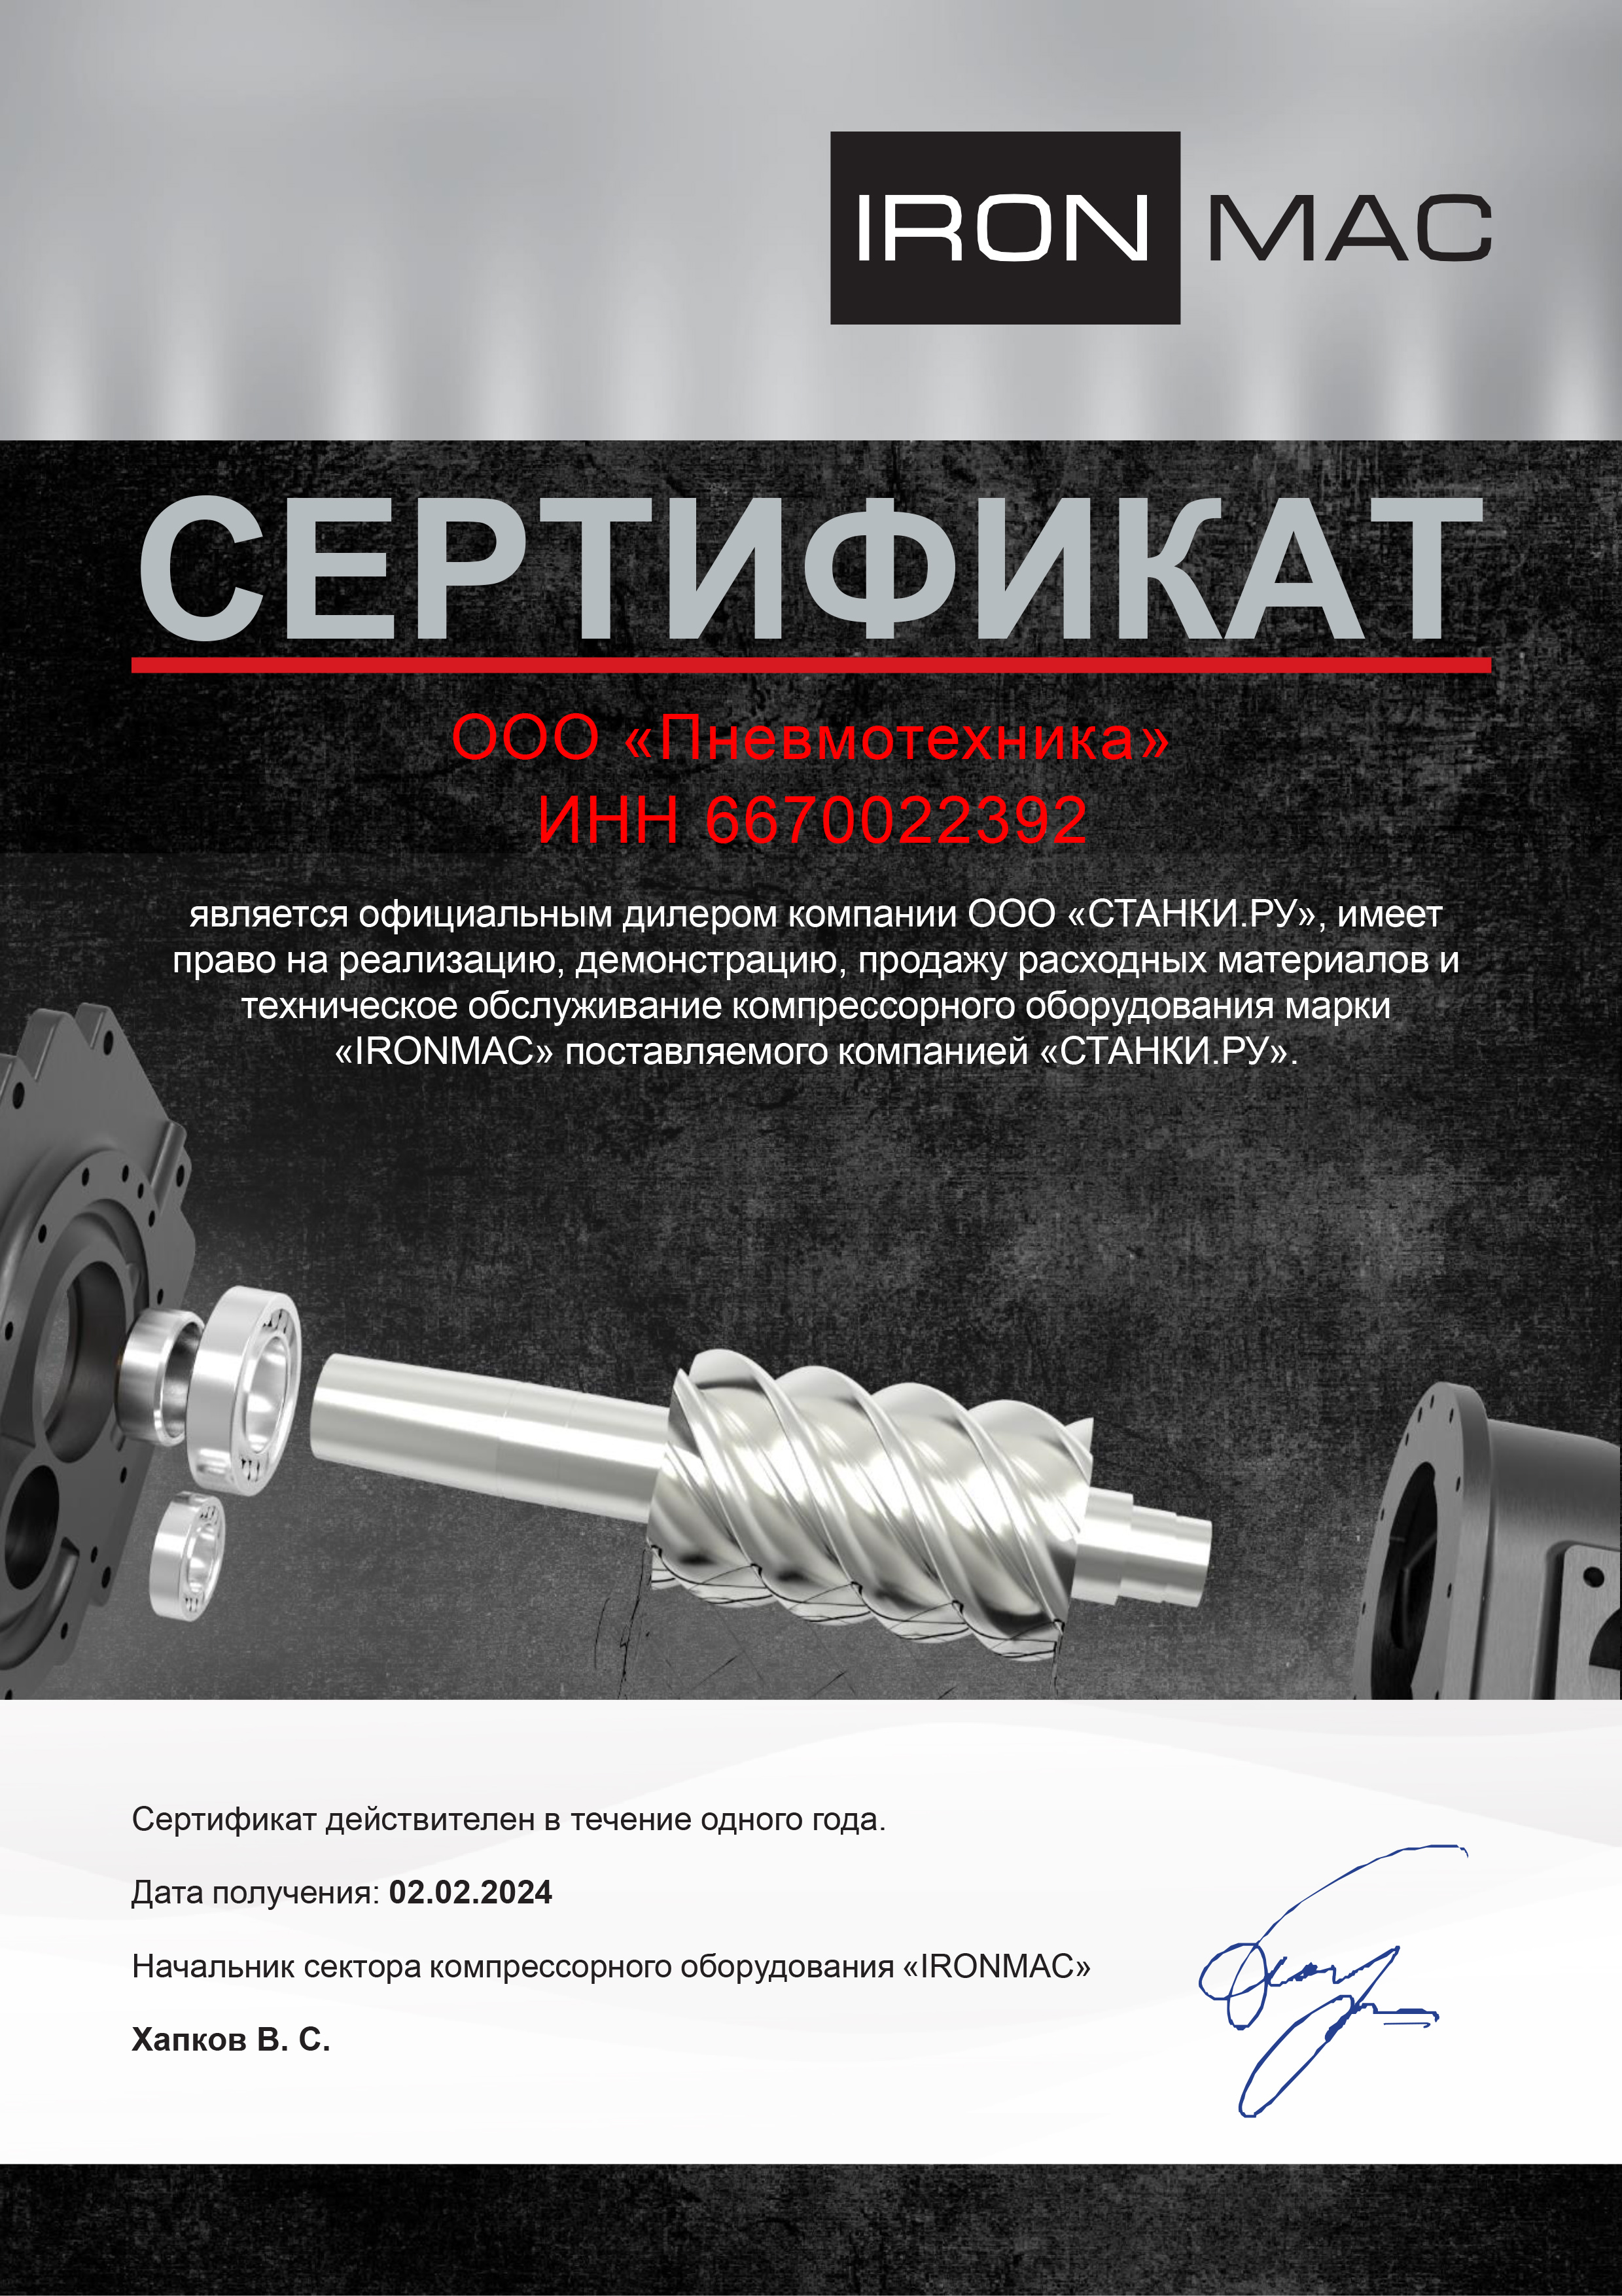 Сертификат, подтверждающий, что ООО «Пневмотехника» является авторизованным дилером Ironmac